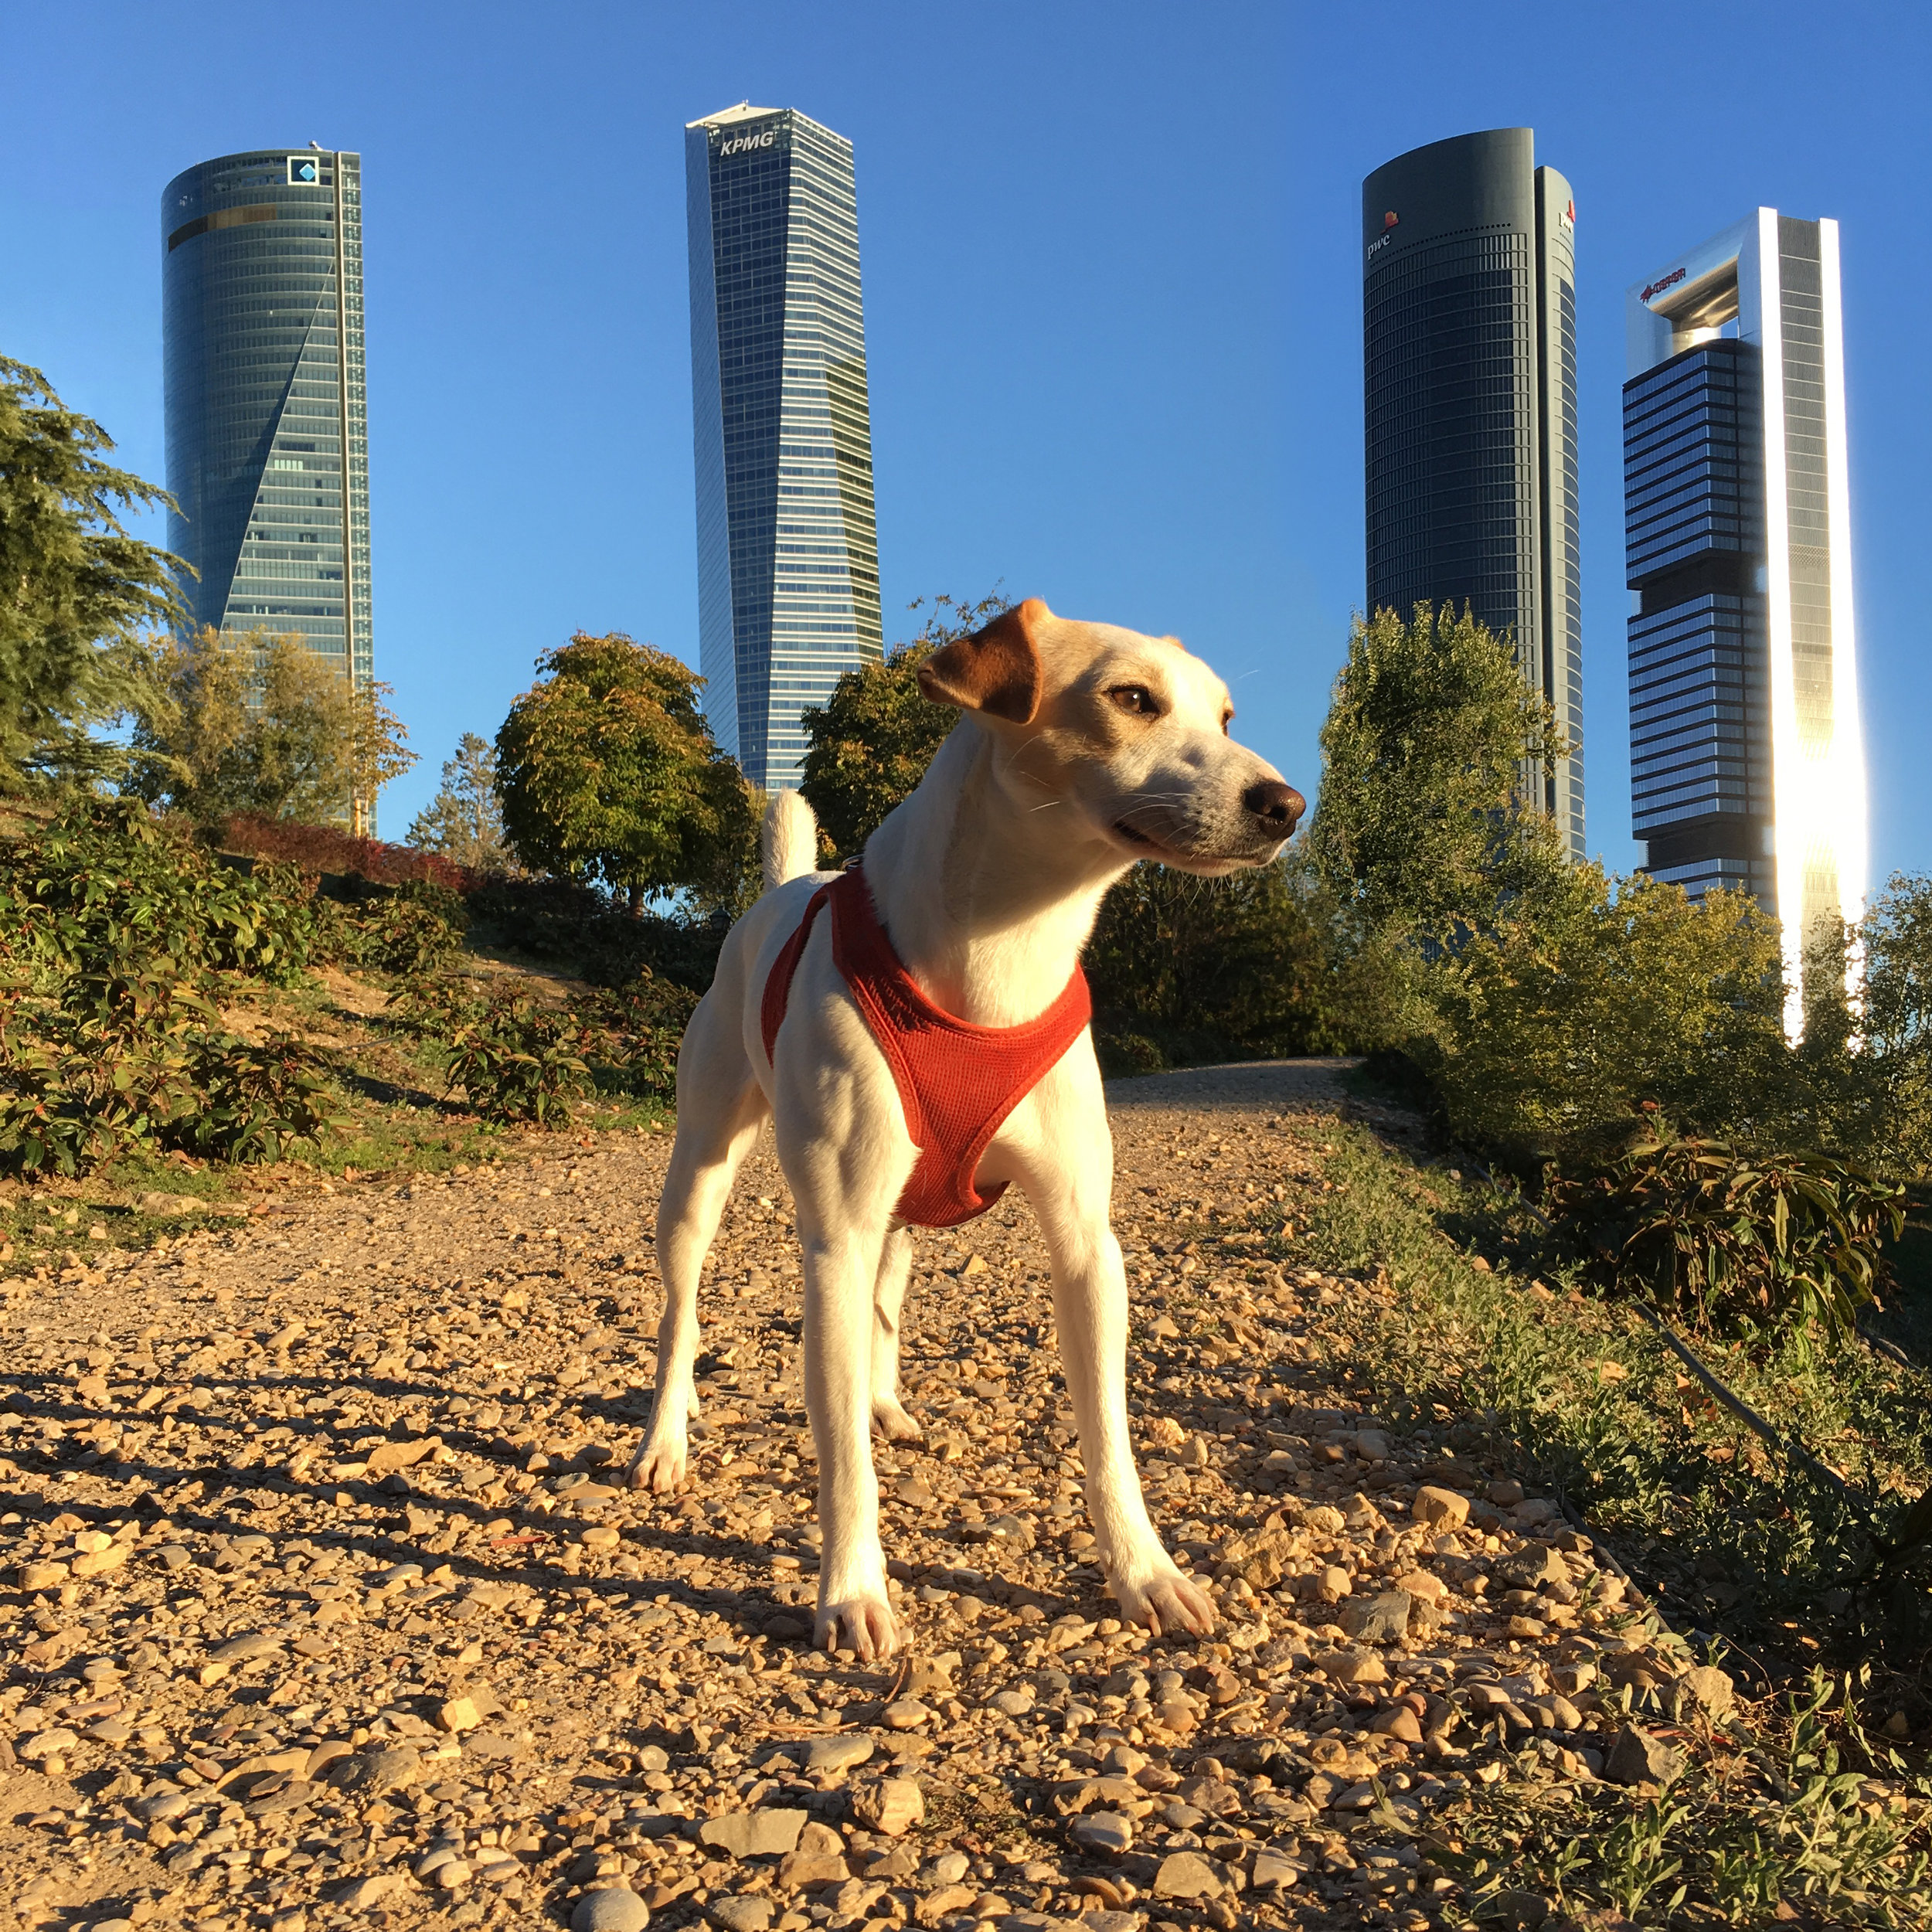 11 parques para ir con perros en Madrid